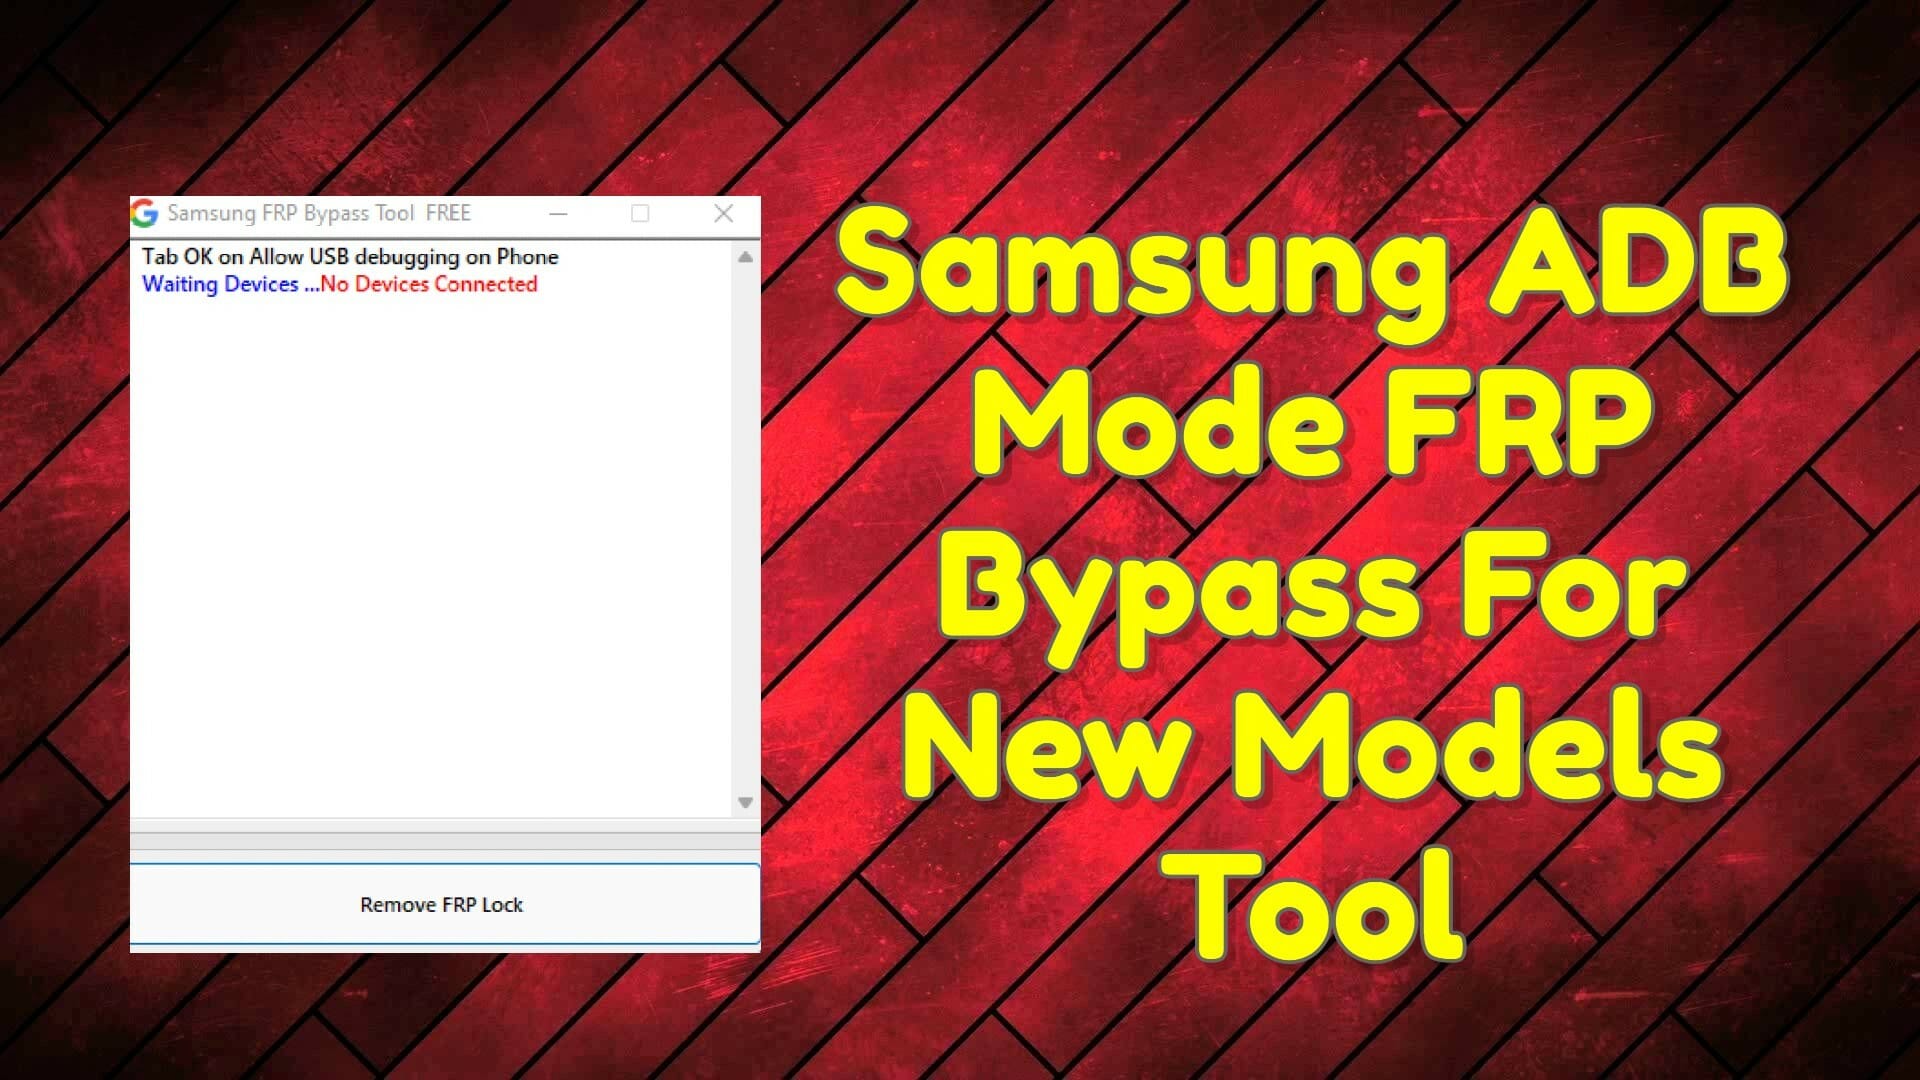 Samsung ADB Mode FRP Bypass New Models Tool